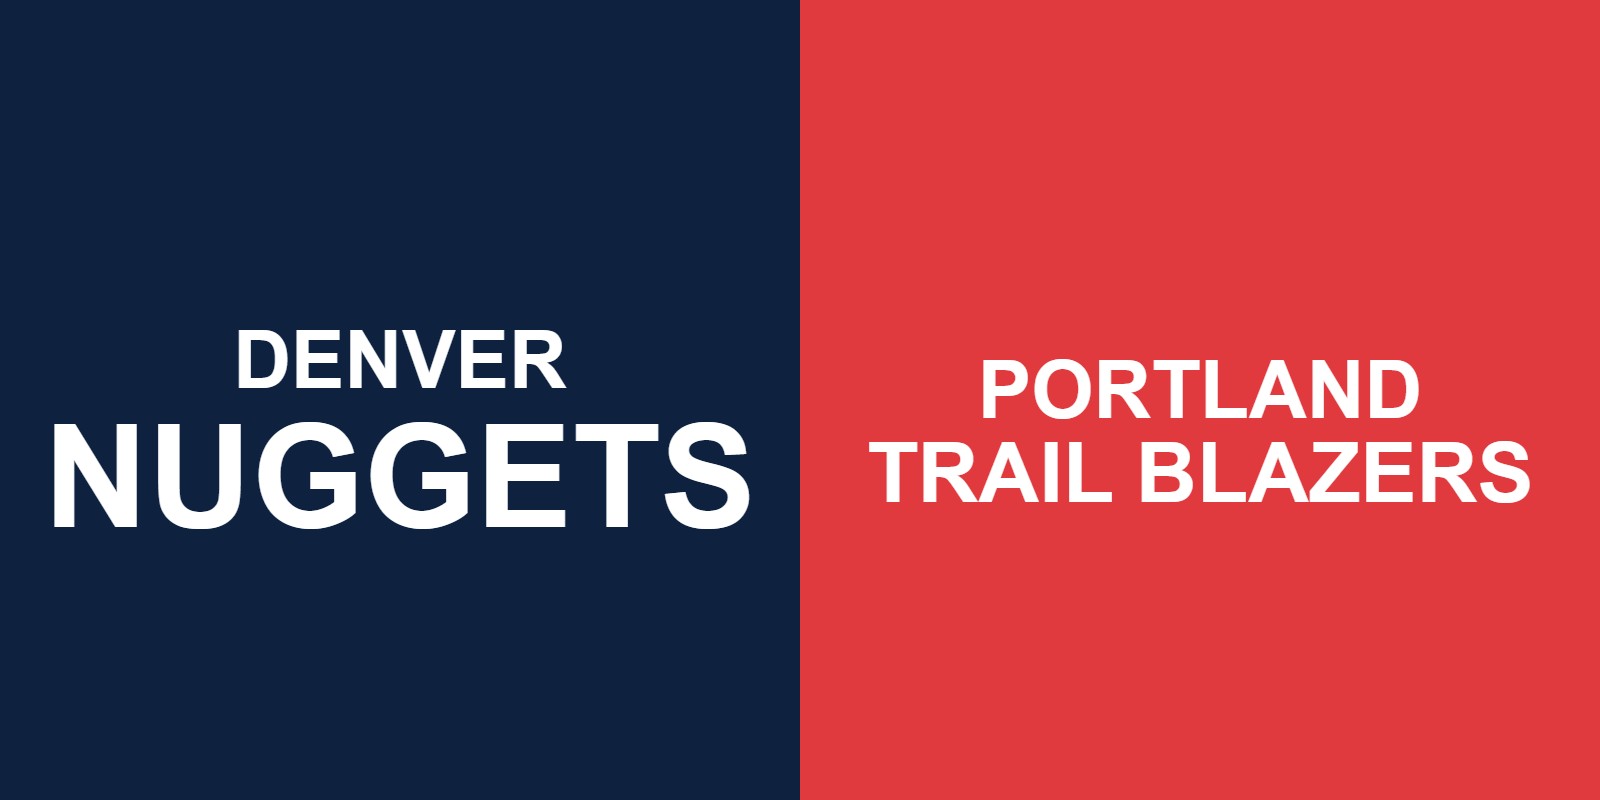 Nuggets vs Trail Blazers